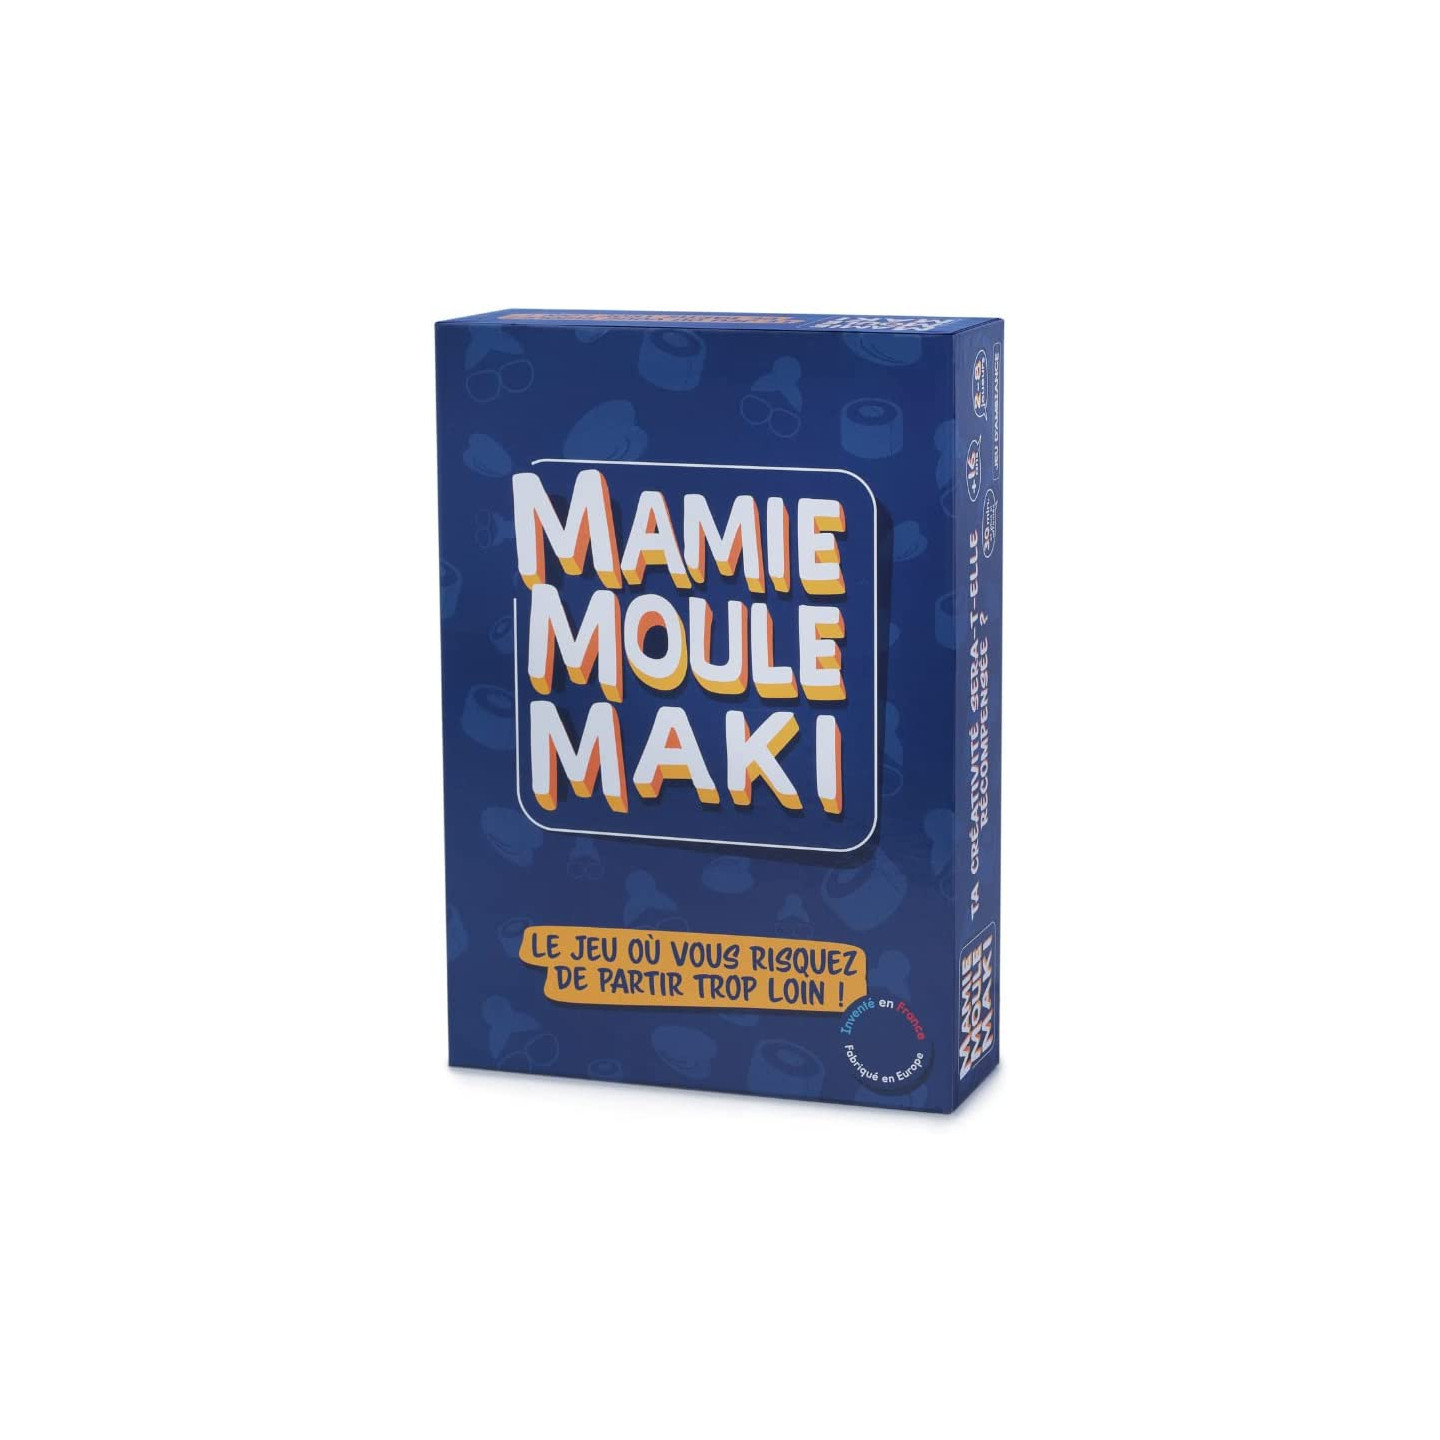 Mamie moule maki, jeux de societe